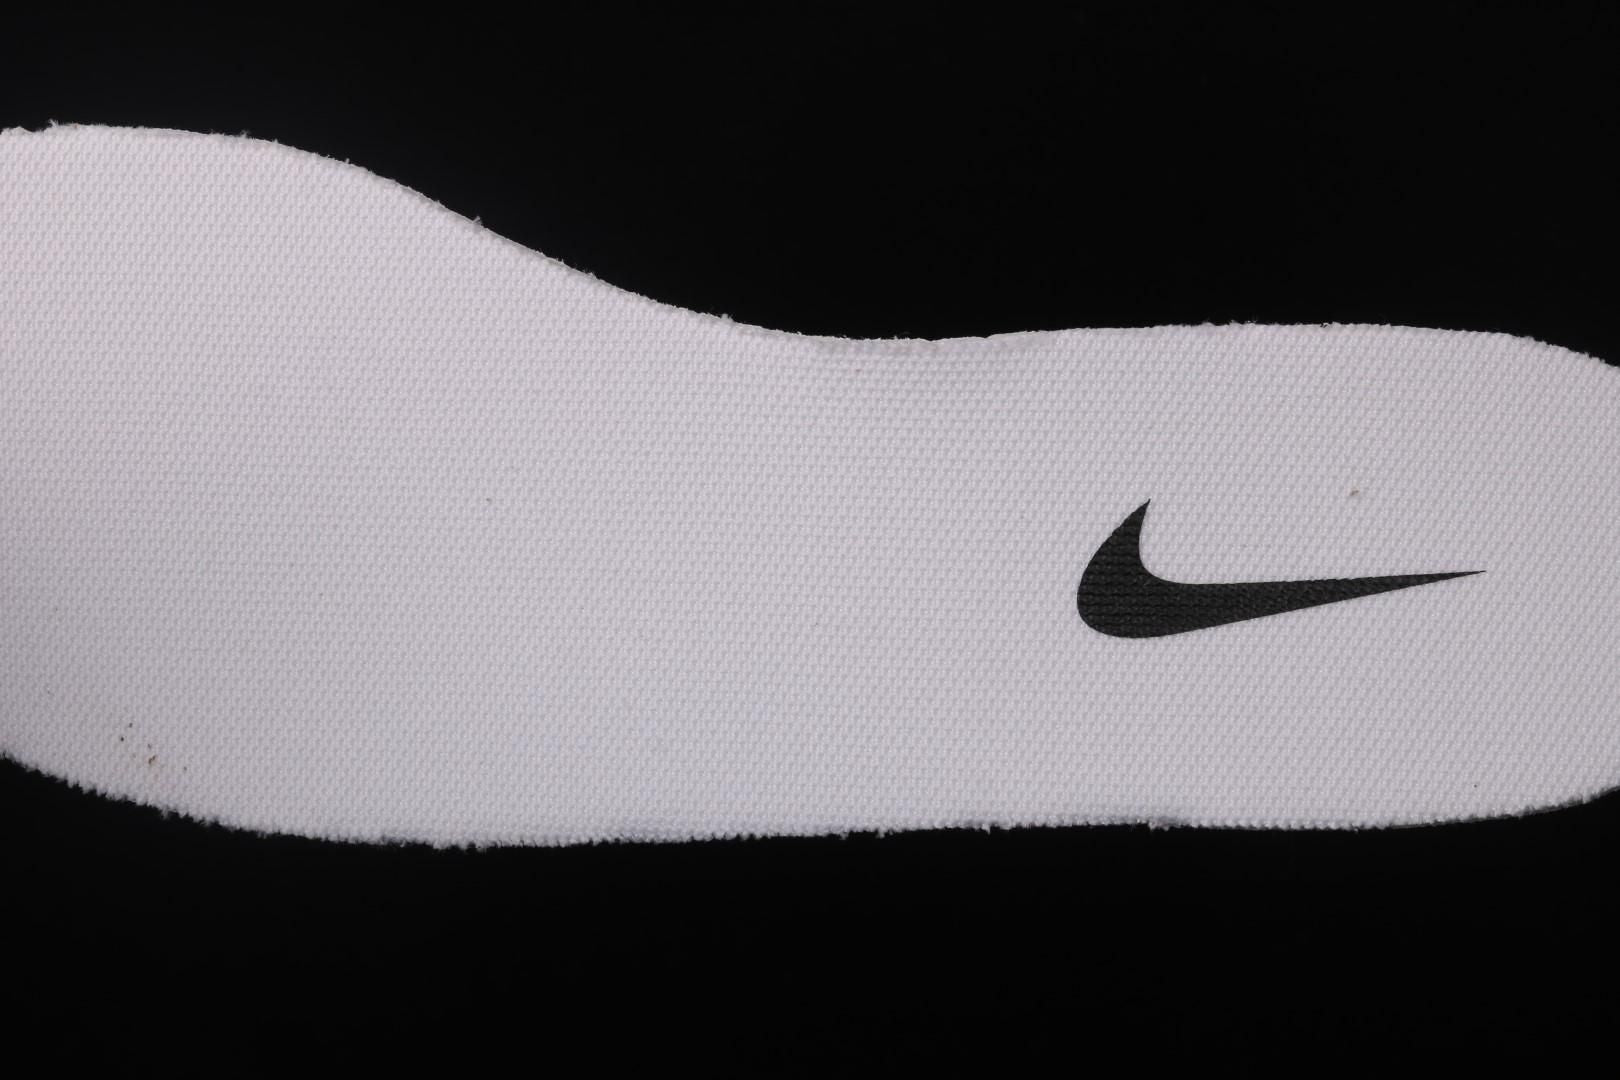 NikeWMNS Blazer Mid 77 Vintage - White/Black